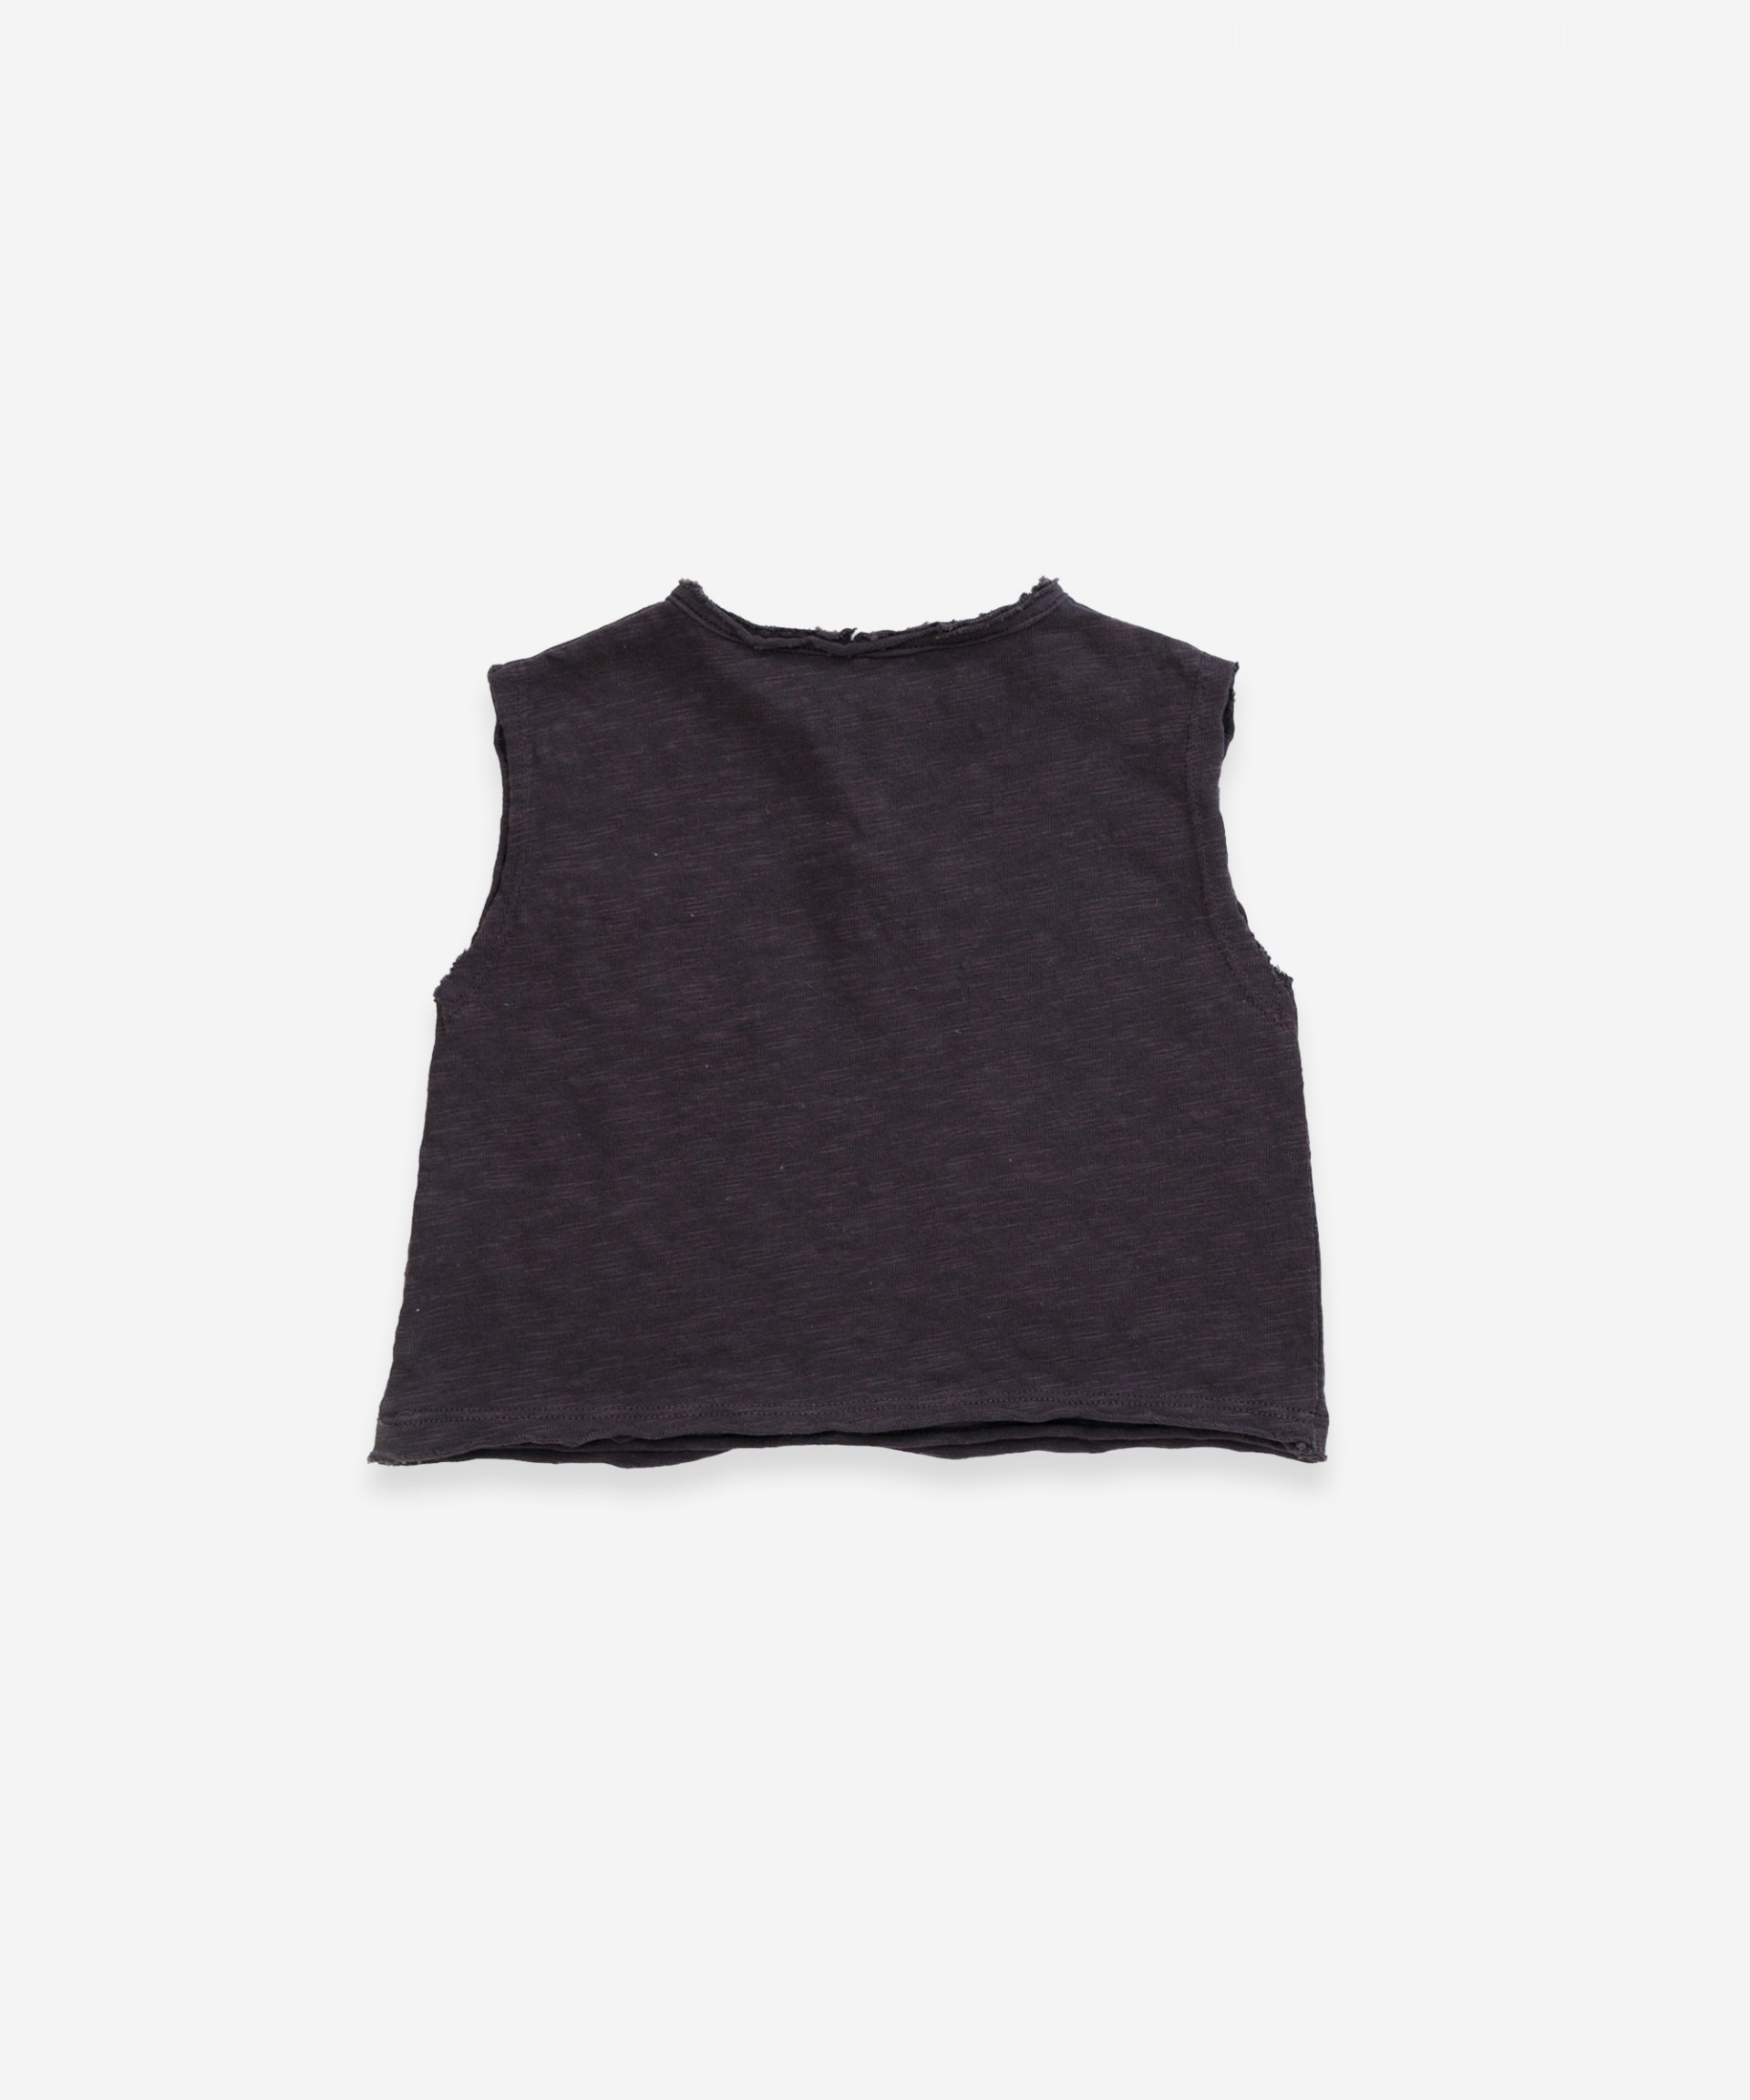 T-shirt sem mangas em algodão orgânico| Weaving